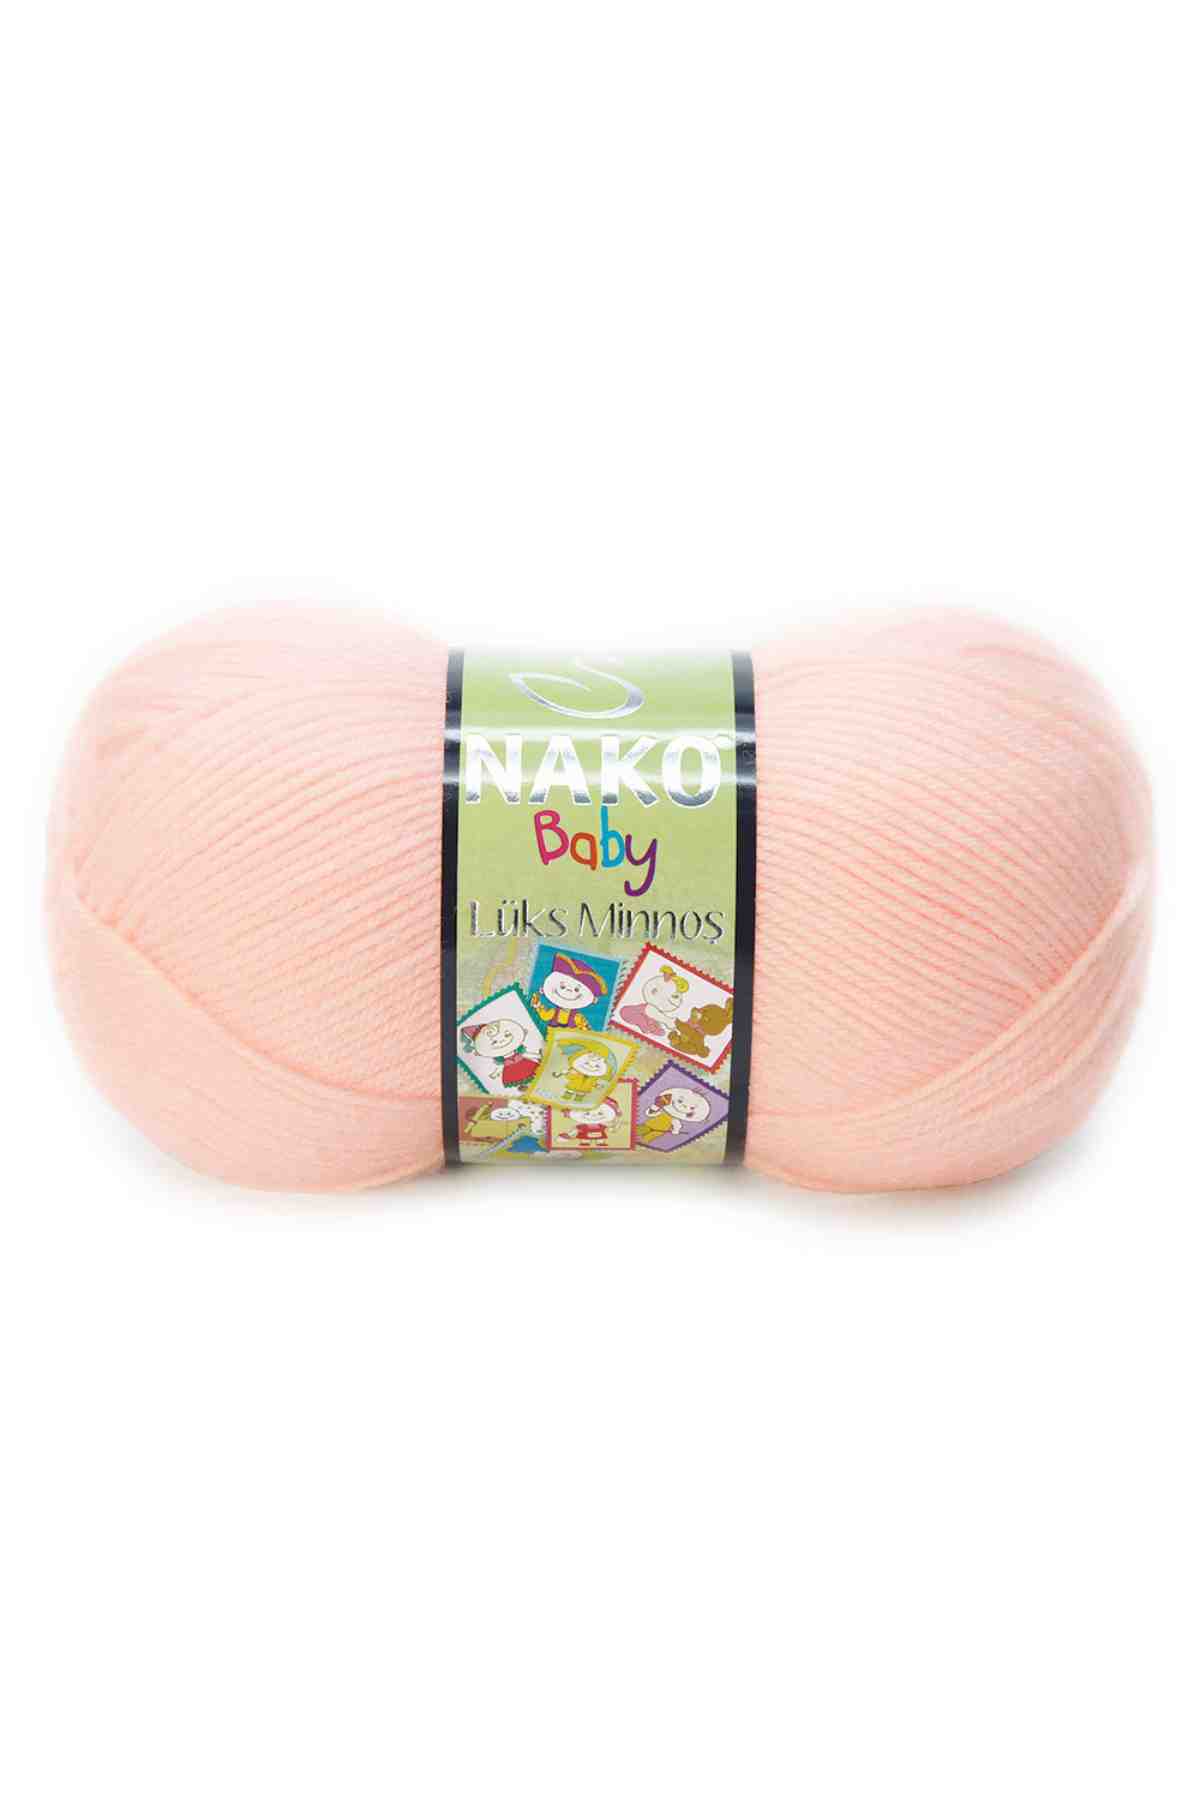 Nako Baby Lüks Minnoş Acrylic Yarn